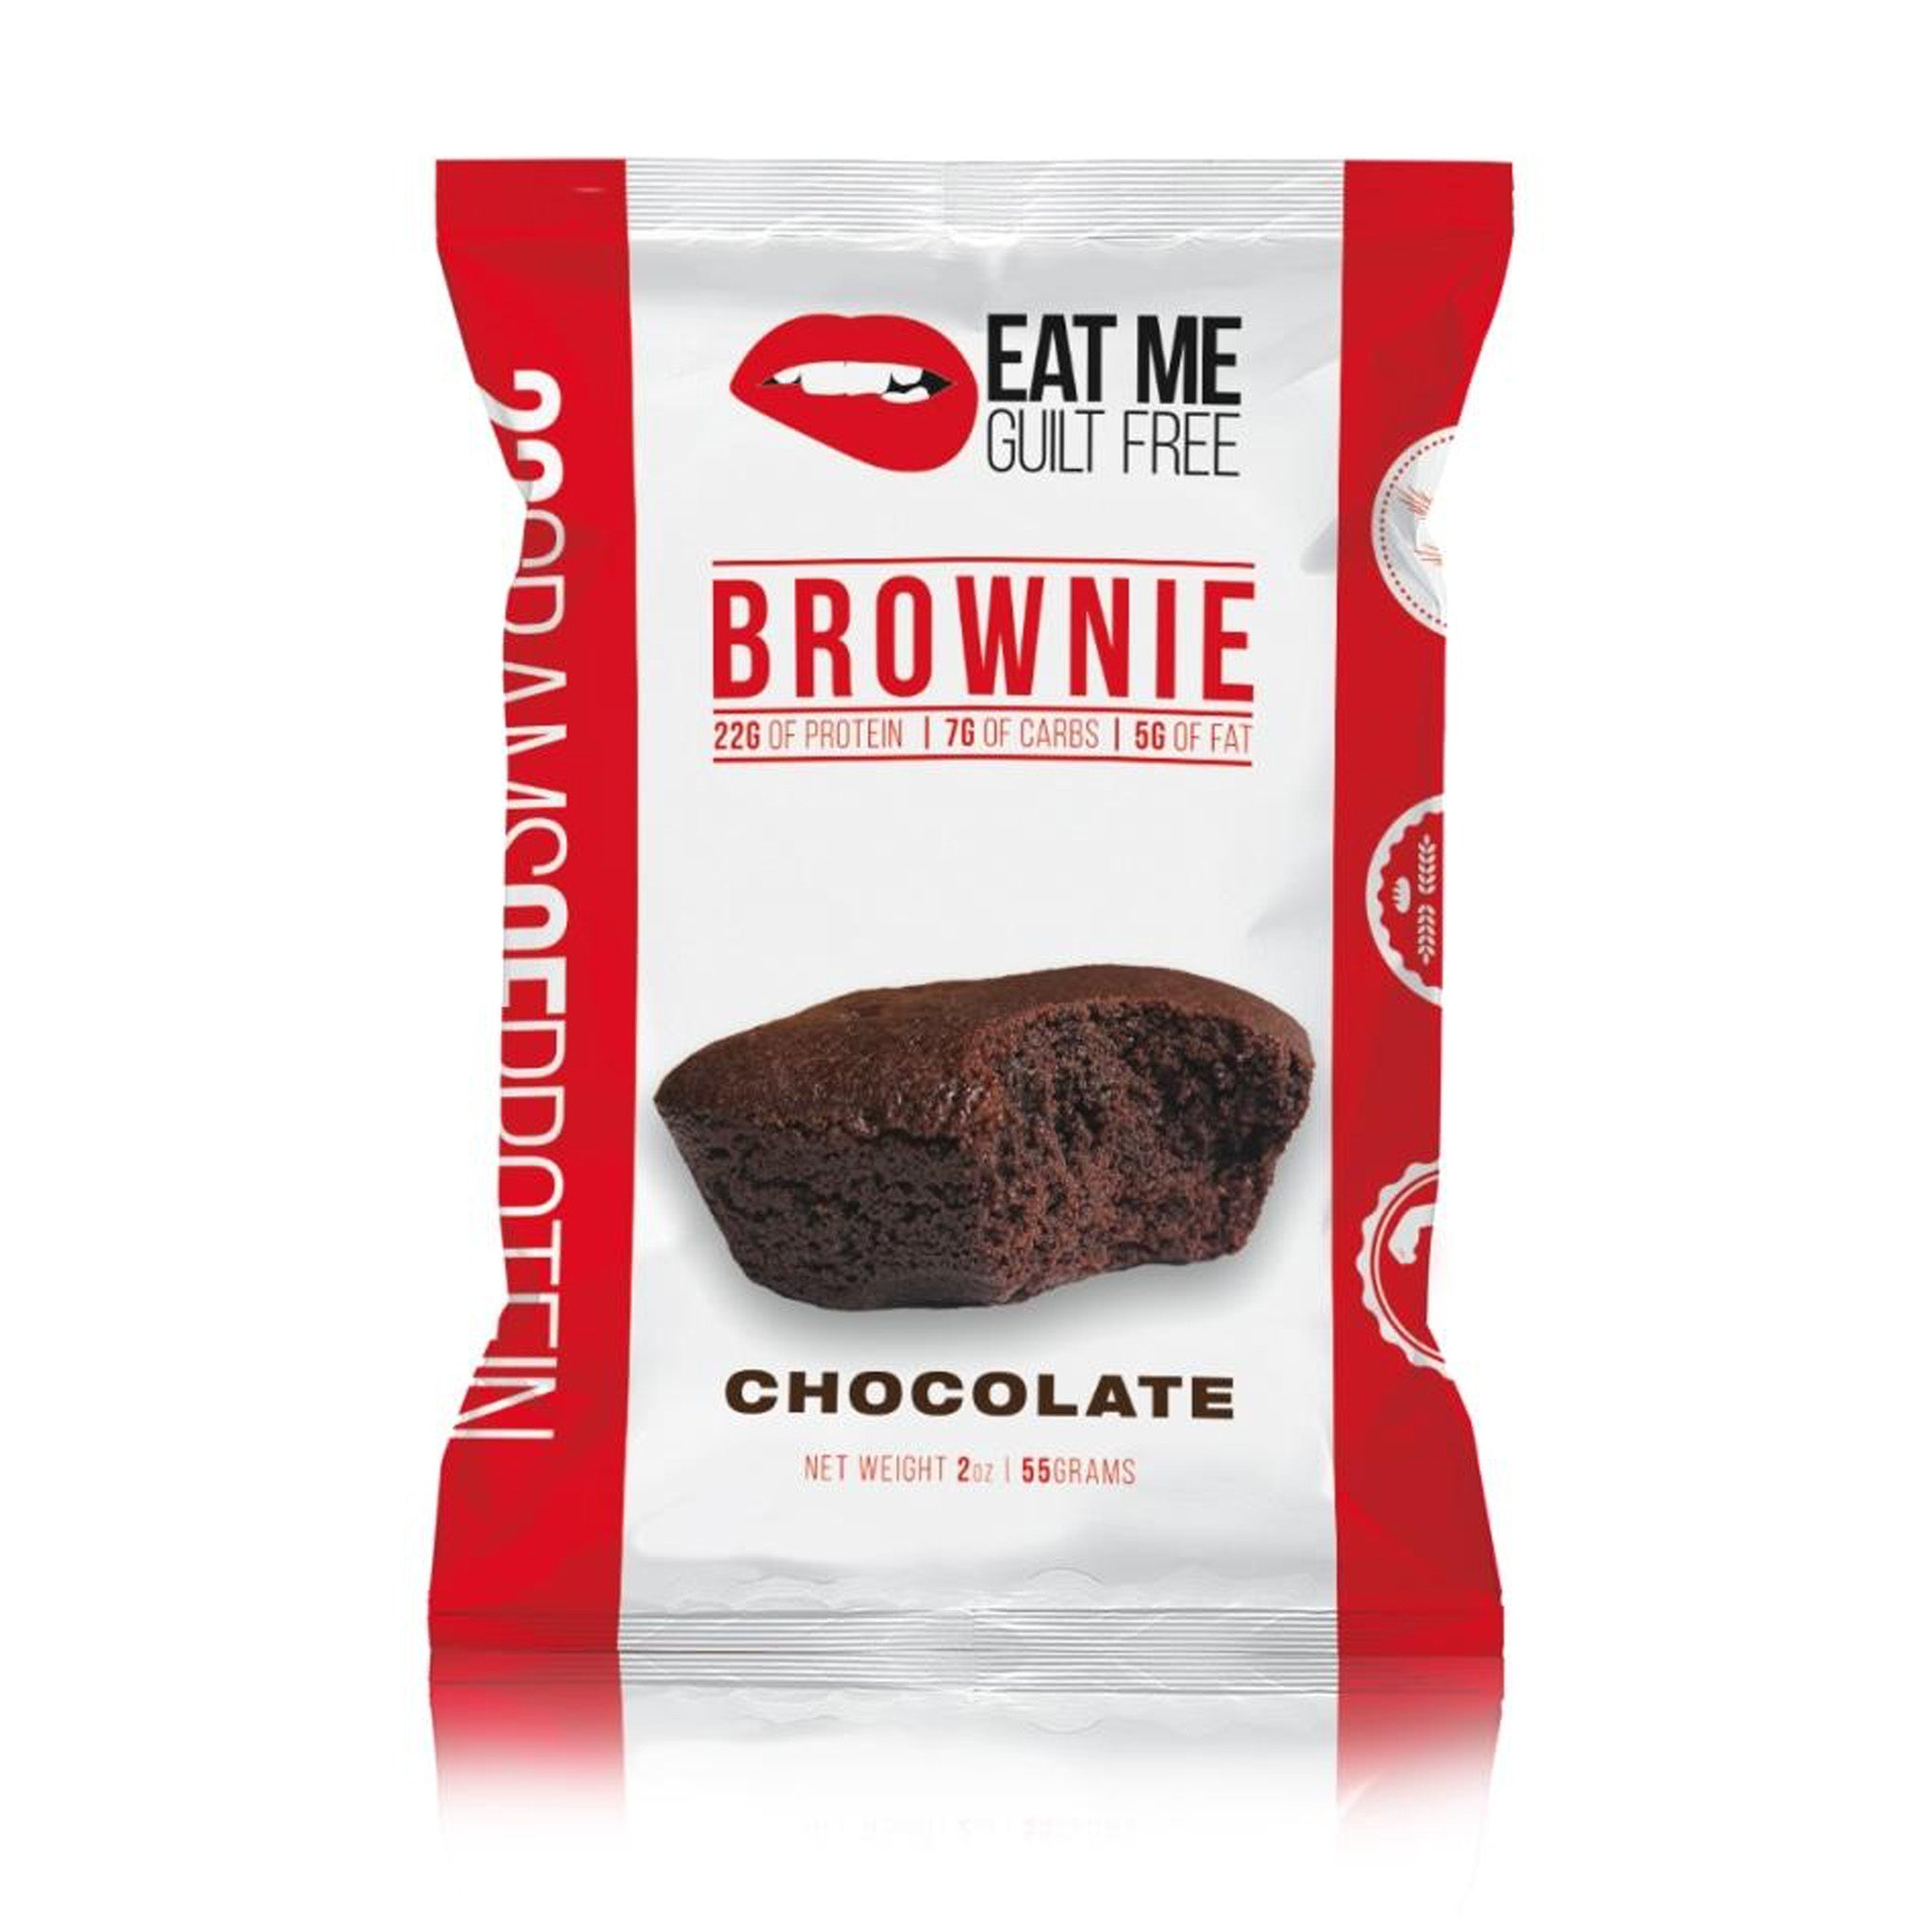 Eat Me Guilt Free Brownie (1 Pack)